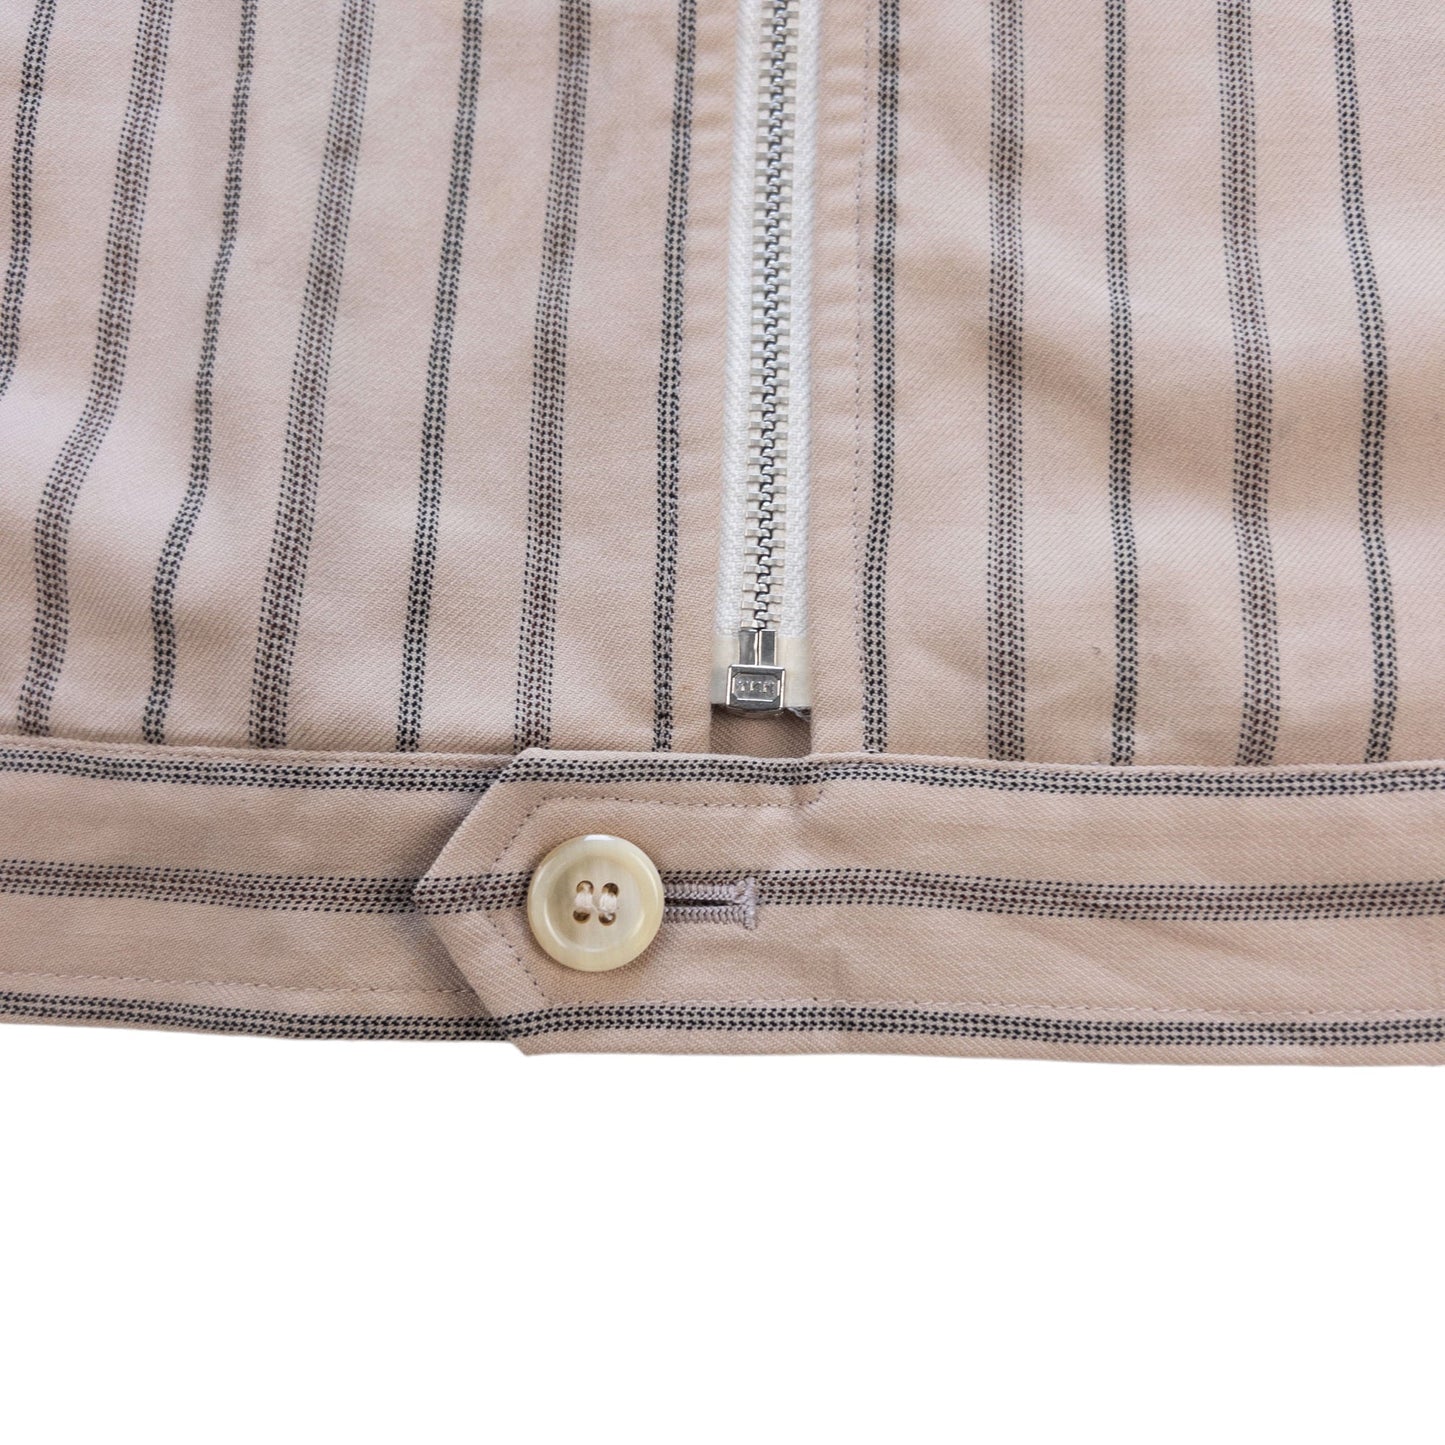 Vintage Comme Des Garcons HOMME Pinstripe Jacket Size L